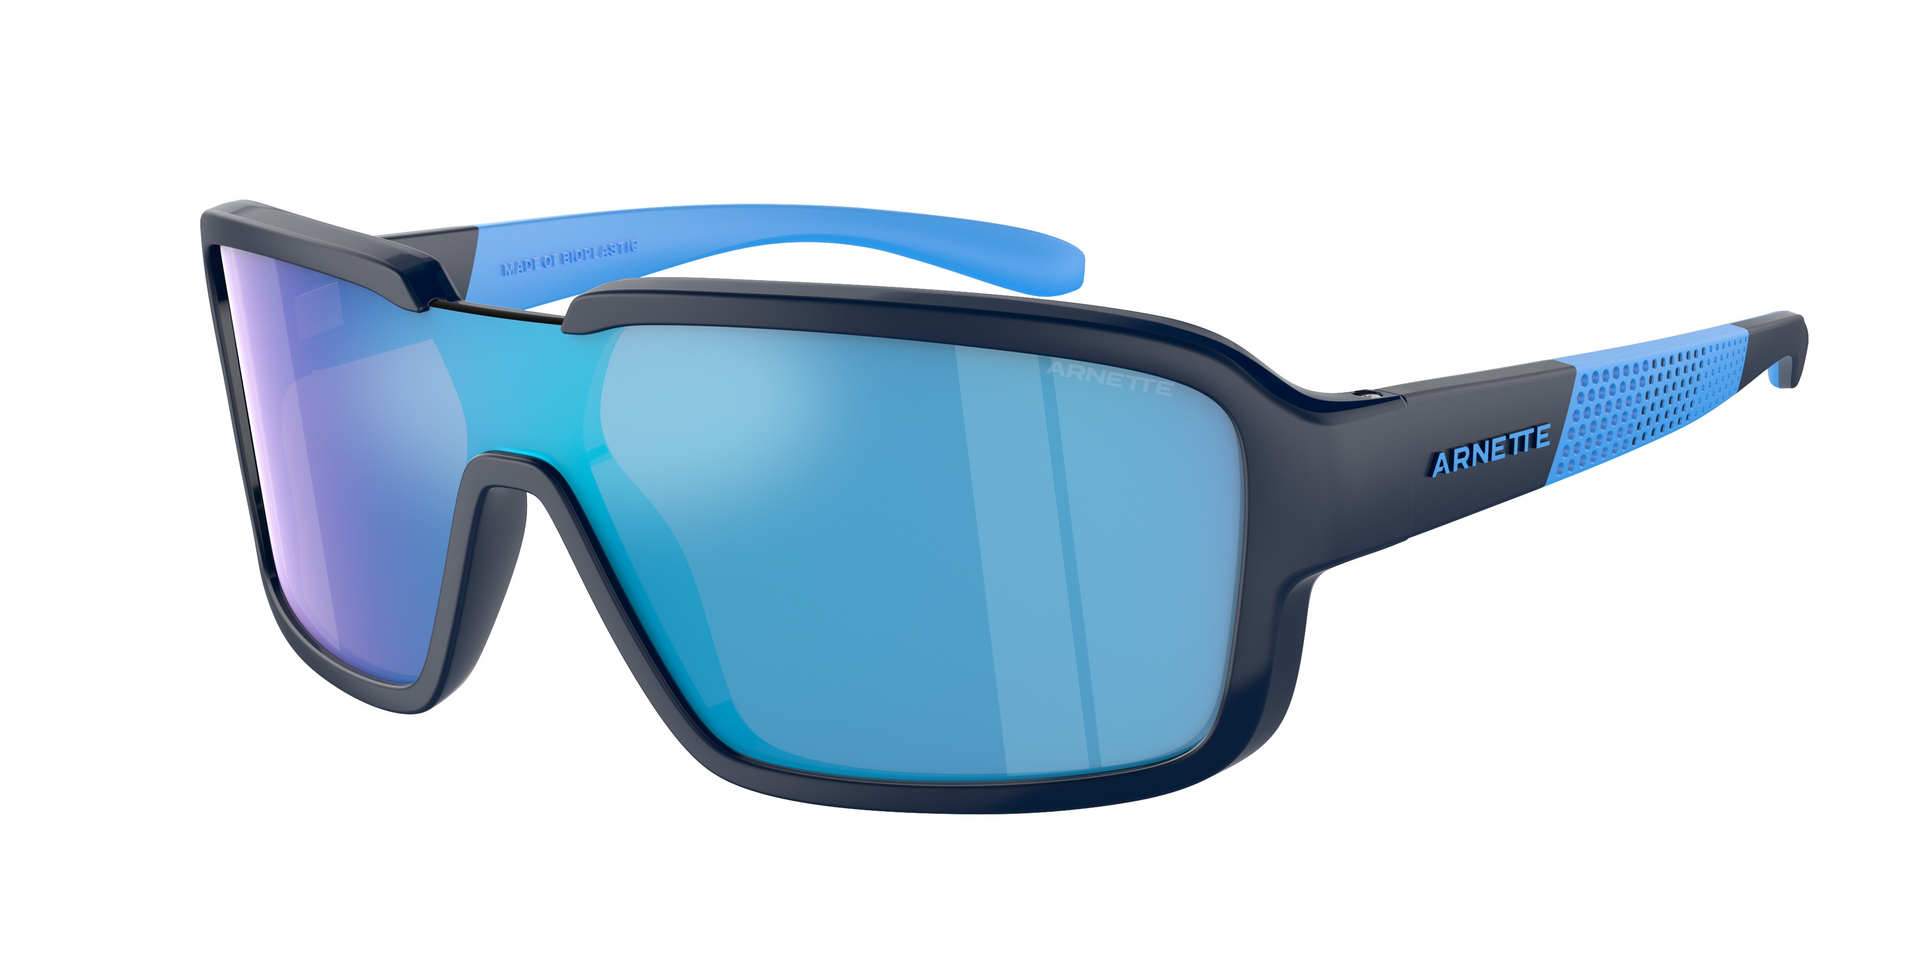 Das Bild zeigt die Sonnenbrille AN4335 275425 von der Marke Arnette in schwarz/blau.